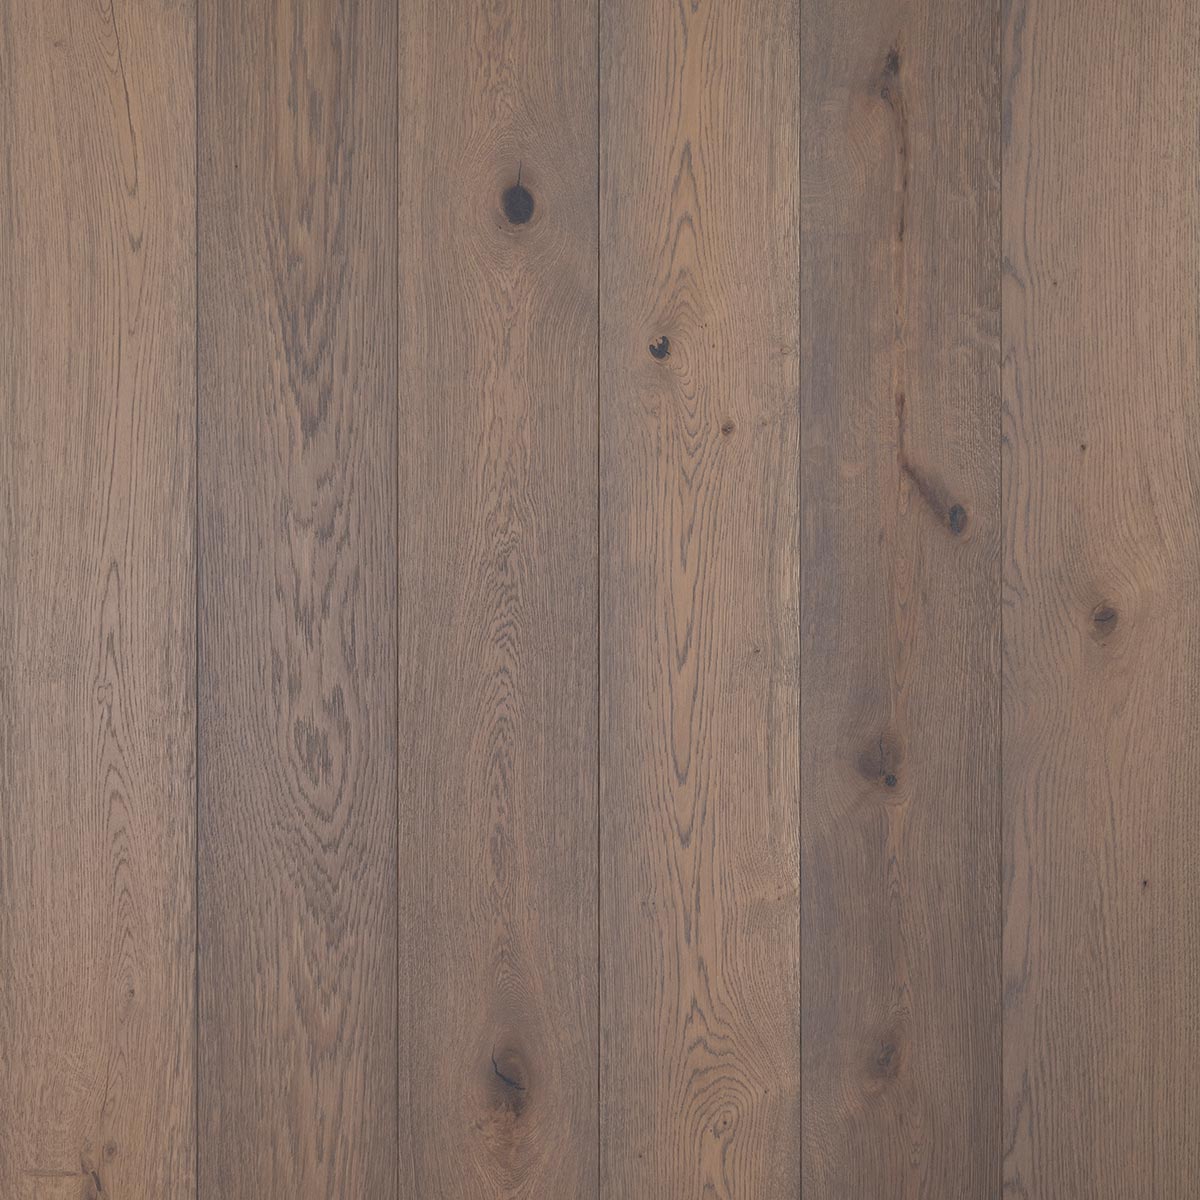 HG107 Delamere - Brushed & Oiled Rustic Oak Bevelled Wooden Floor